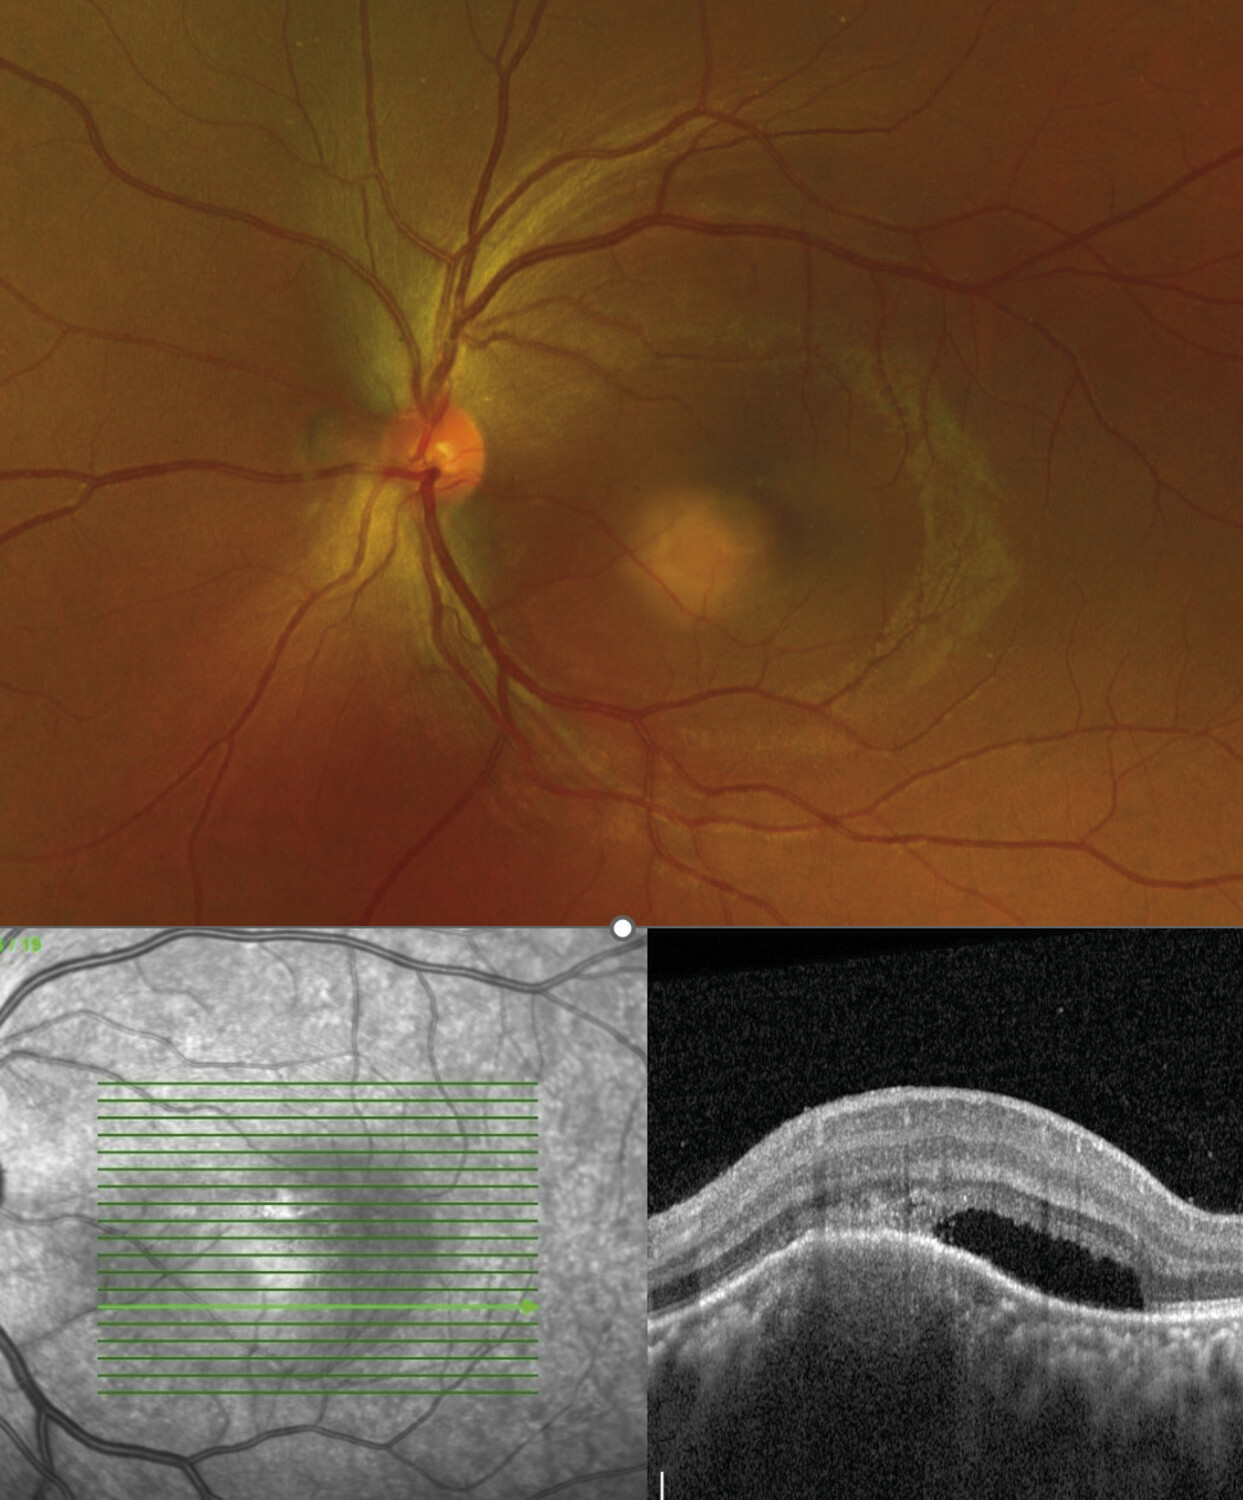 Tuberculose oculaire : démarche diagnostique et thérapeutique - Figure 2